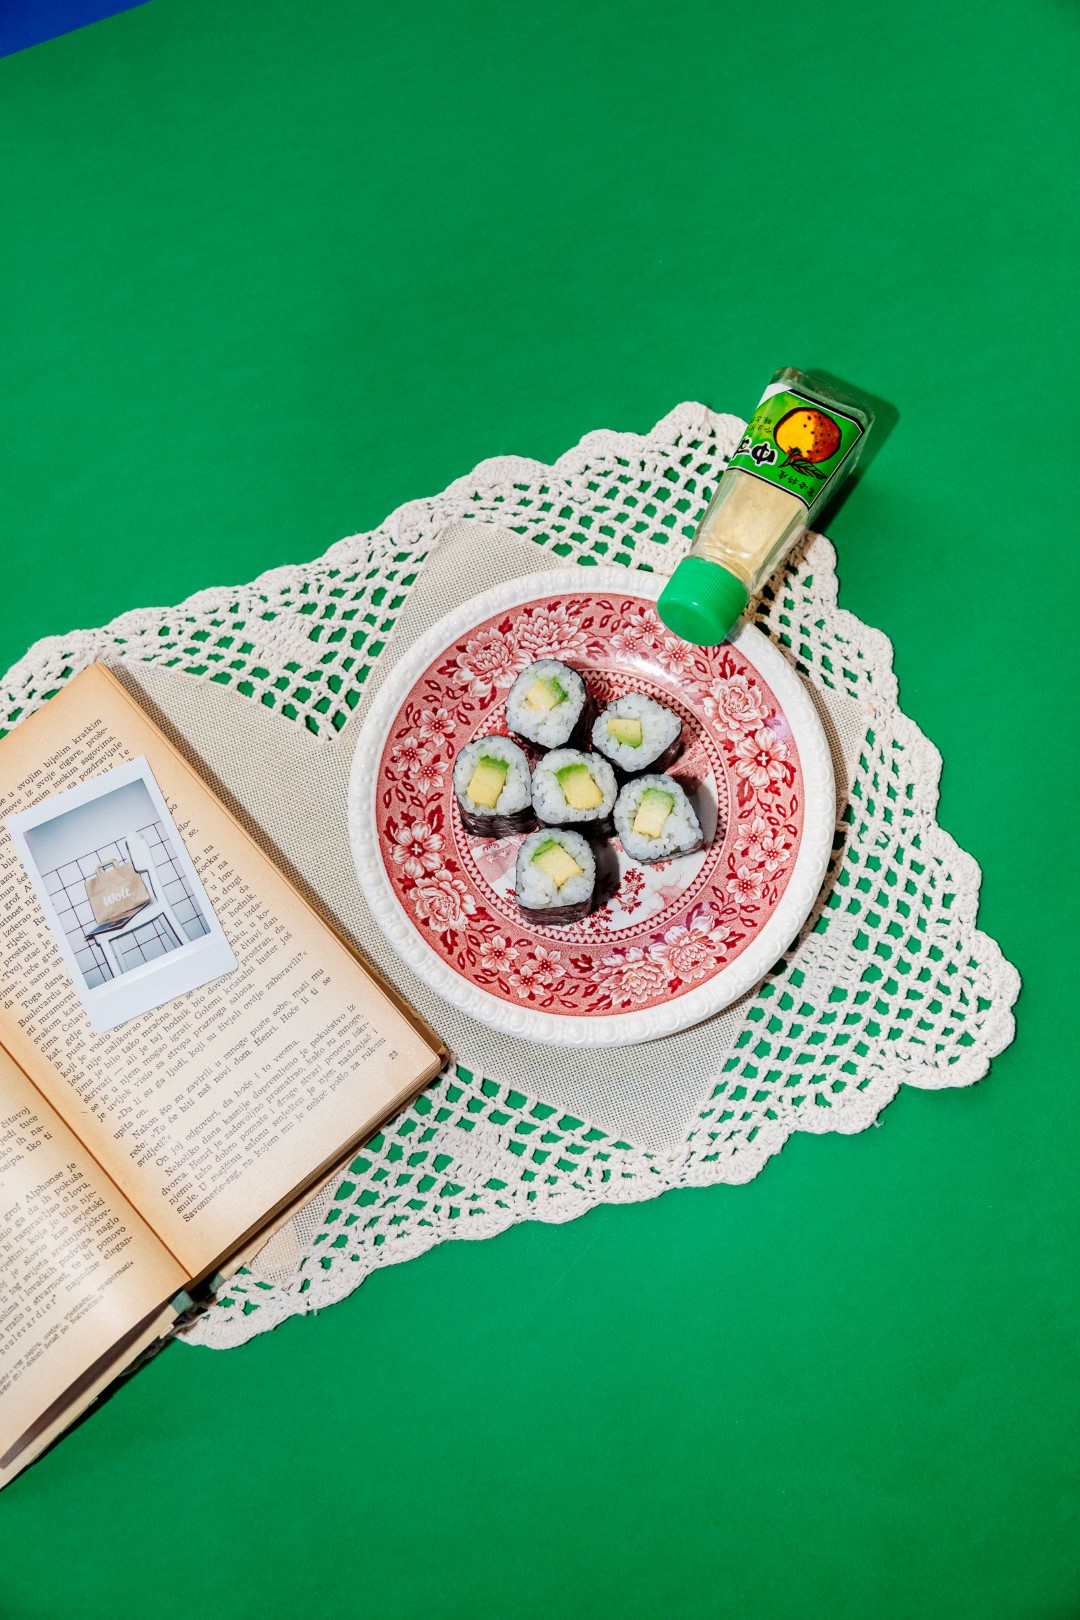 SoHo Sushi Rolls & Poke bowls razigranim vizualnim identitetom i šarenim zalogajima donosi novi doživljaj